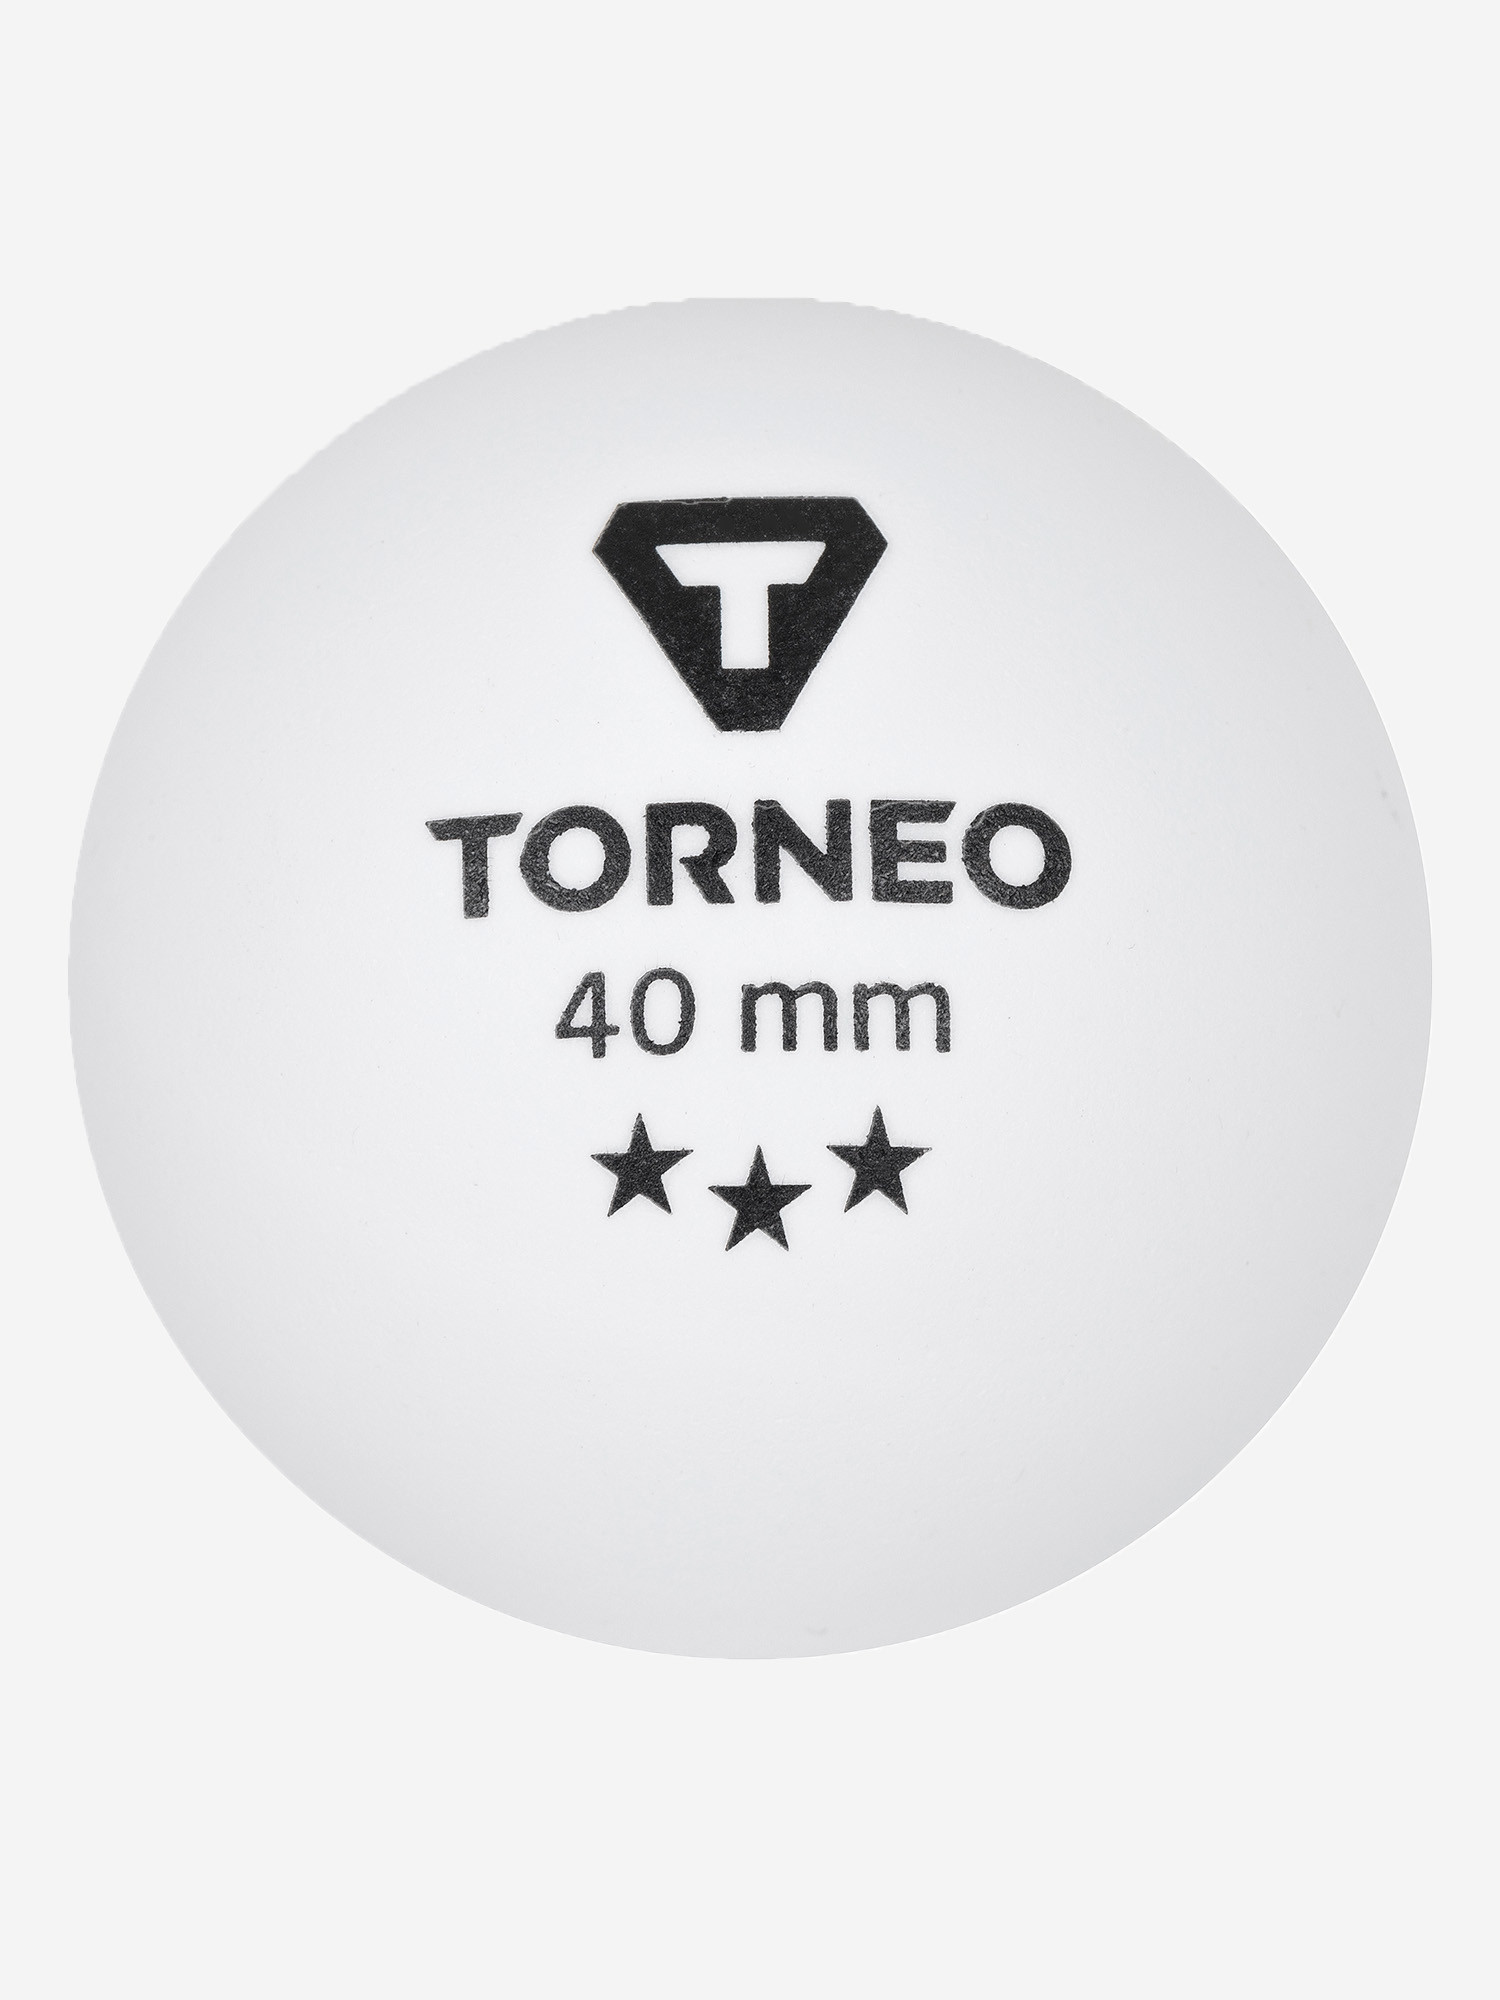 М'ячі для настільного тенісу Torneo, 3 шт.